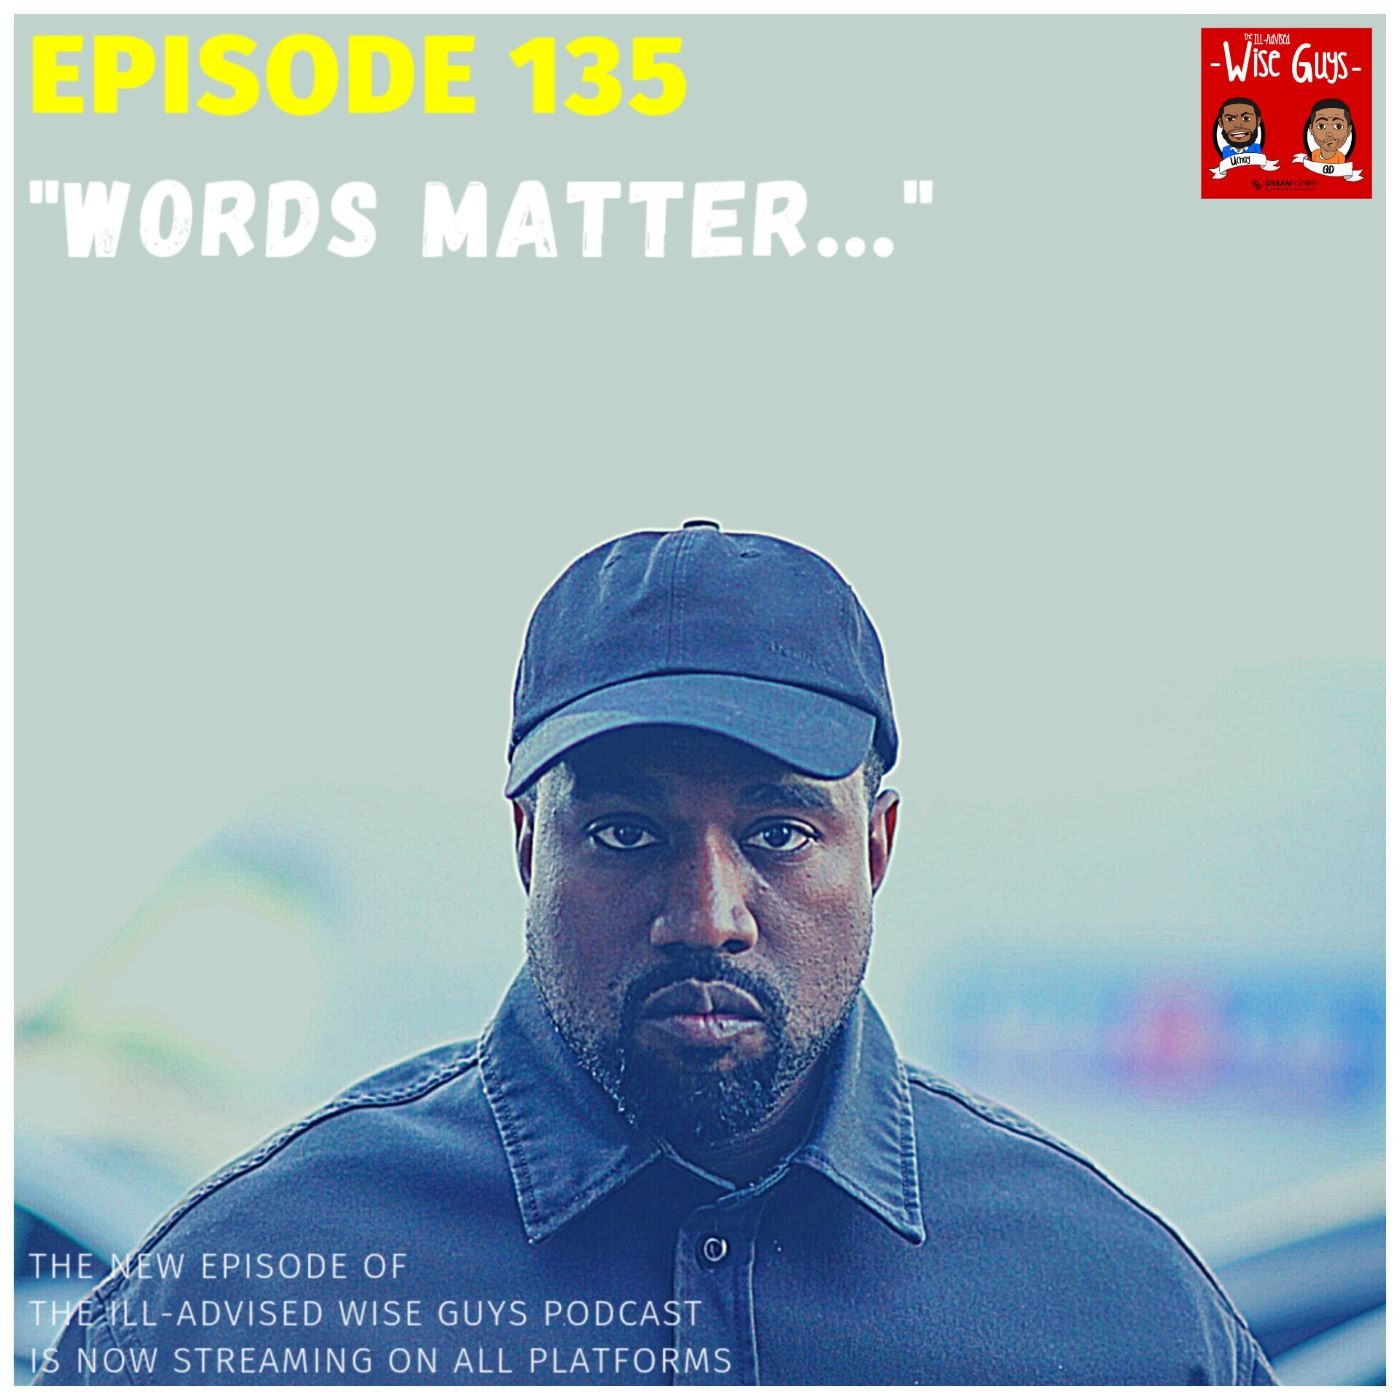 Episode 135 - "Words Matter..." Image